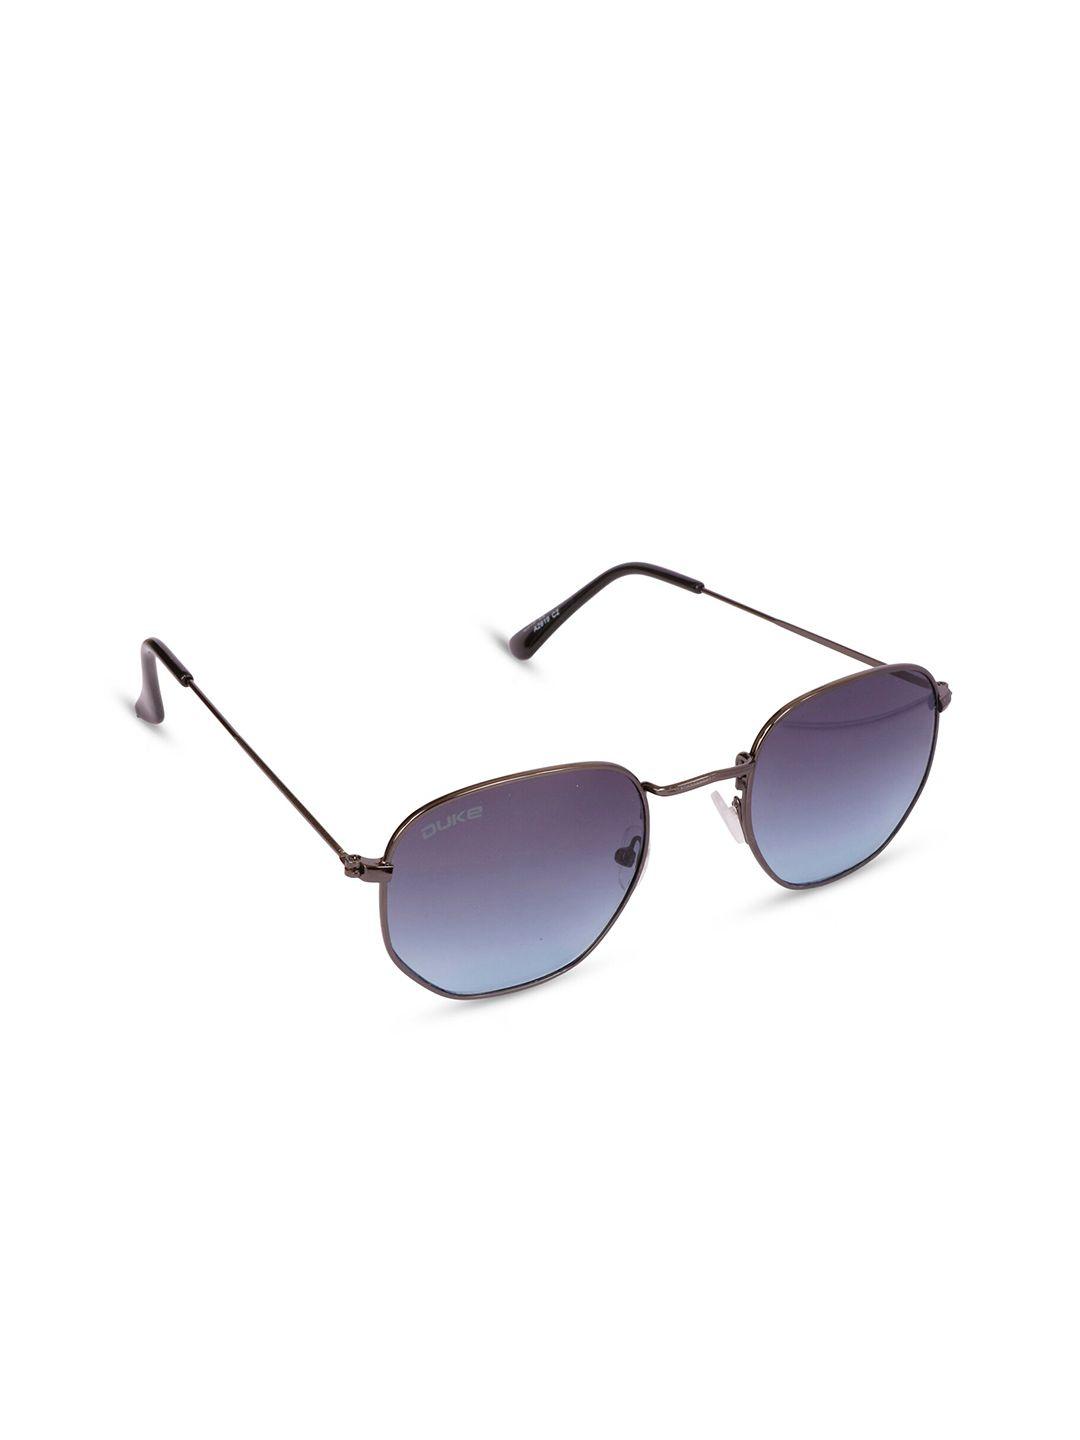 duke unisex blue lens & gunmetal-toned other sunglasses with uv protected lens